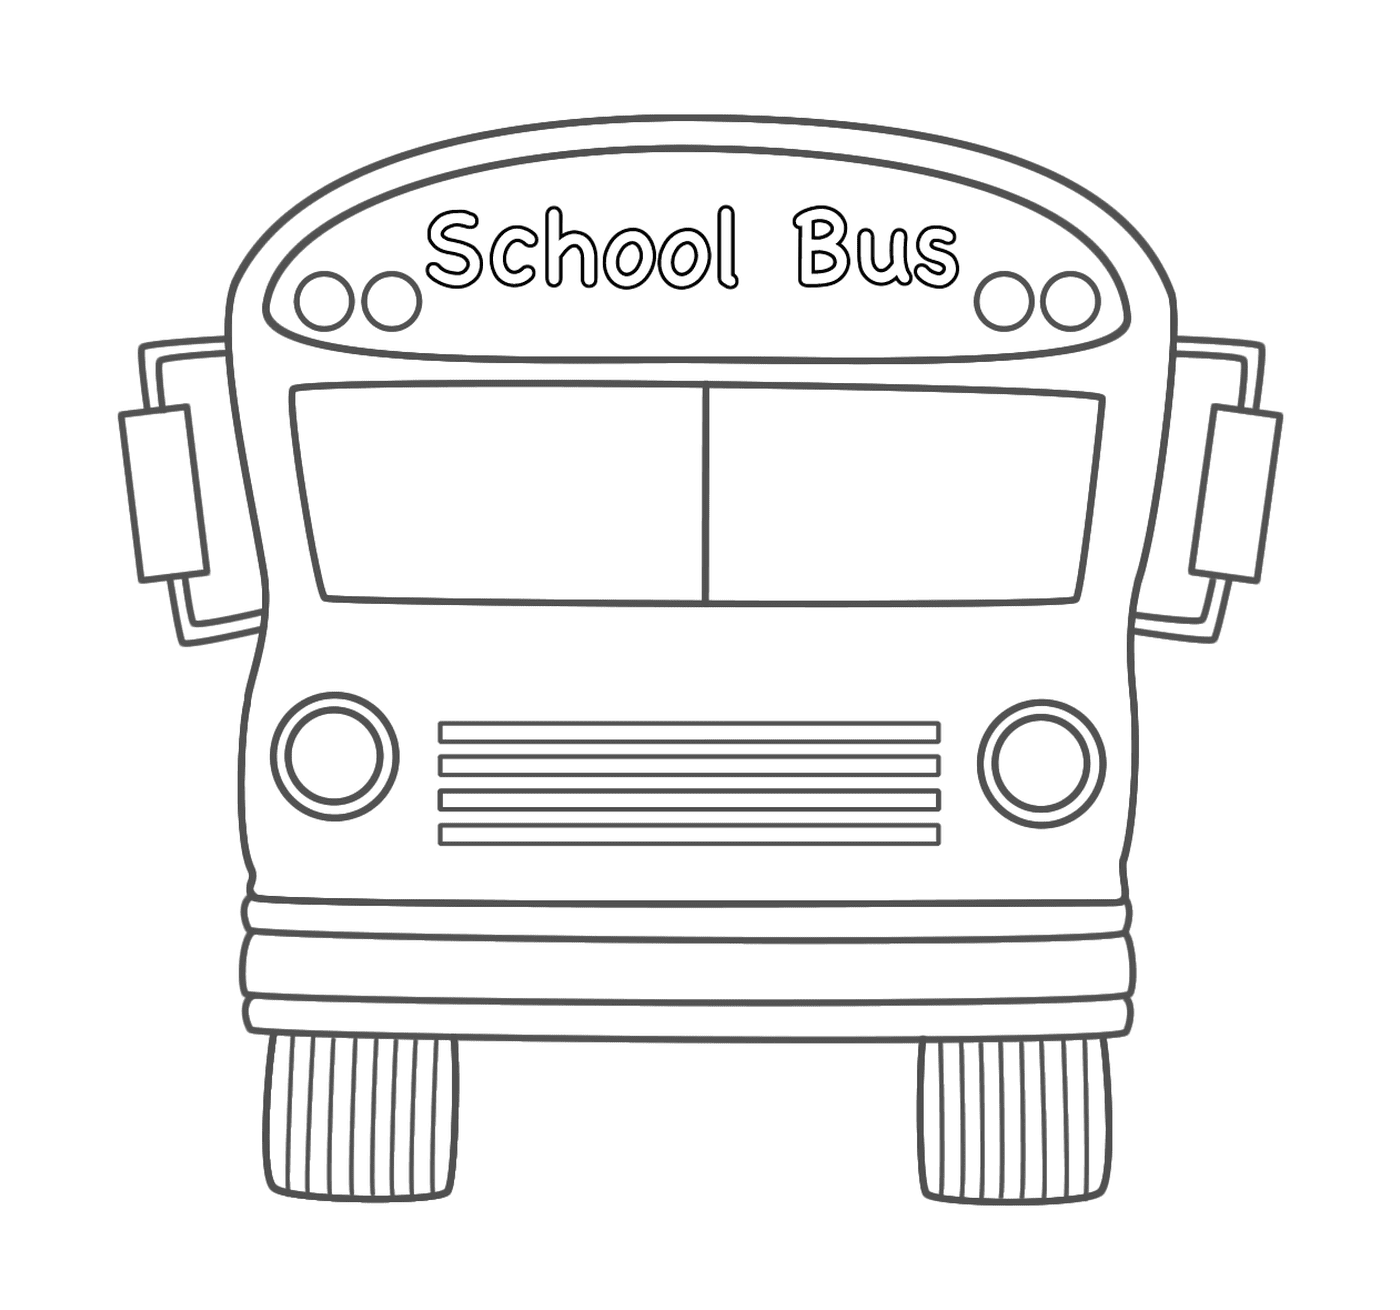  A school bus 